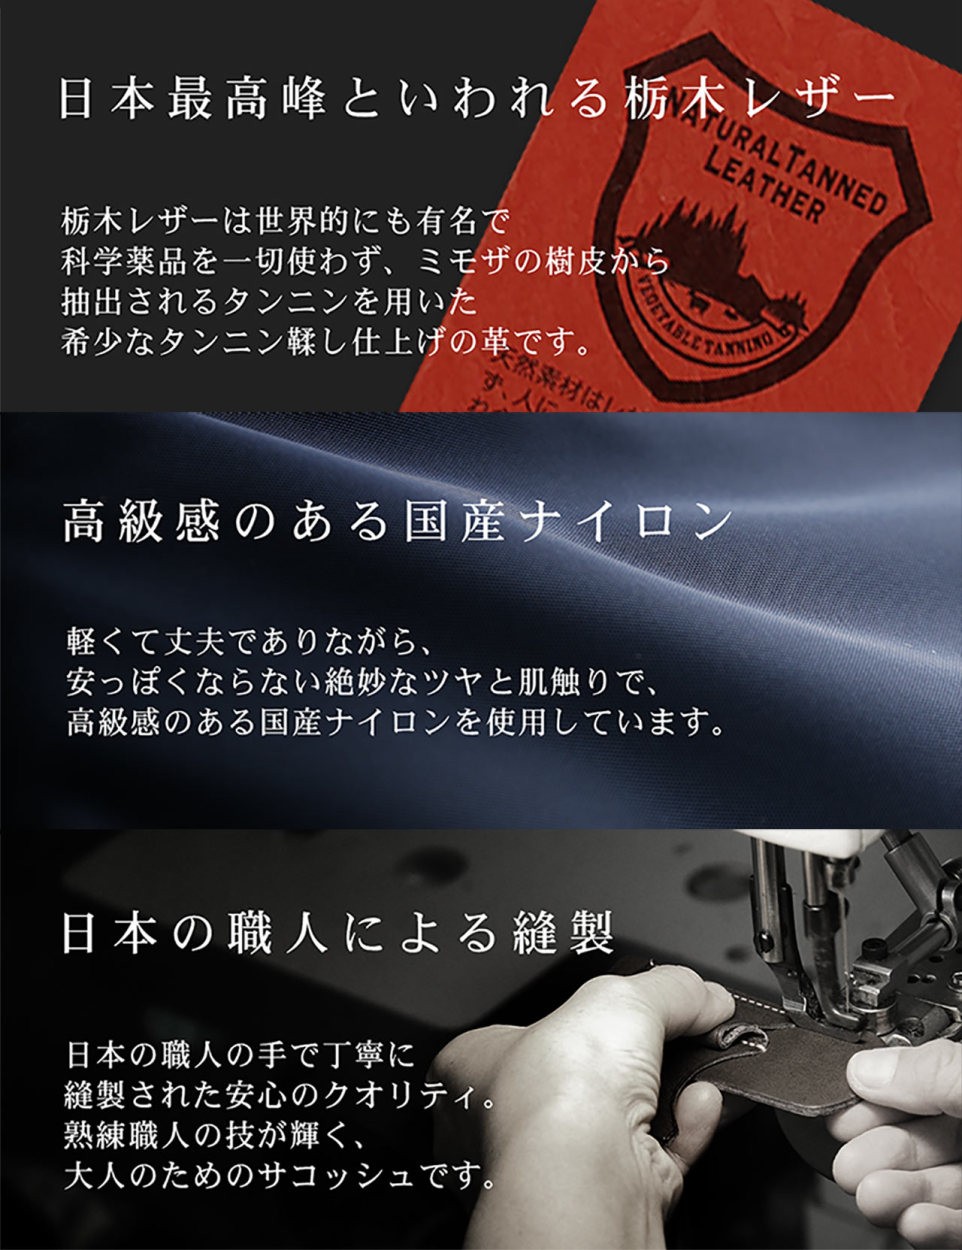 HALEINE サコッシュ マチ付き 日本製 ナイロン 栃木レザー メンズ 横型